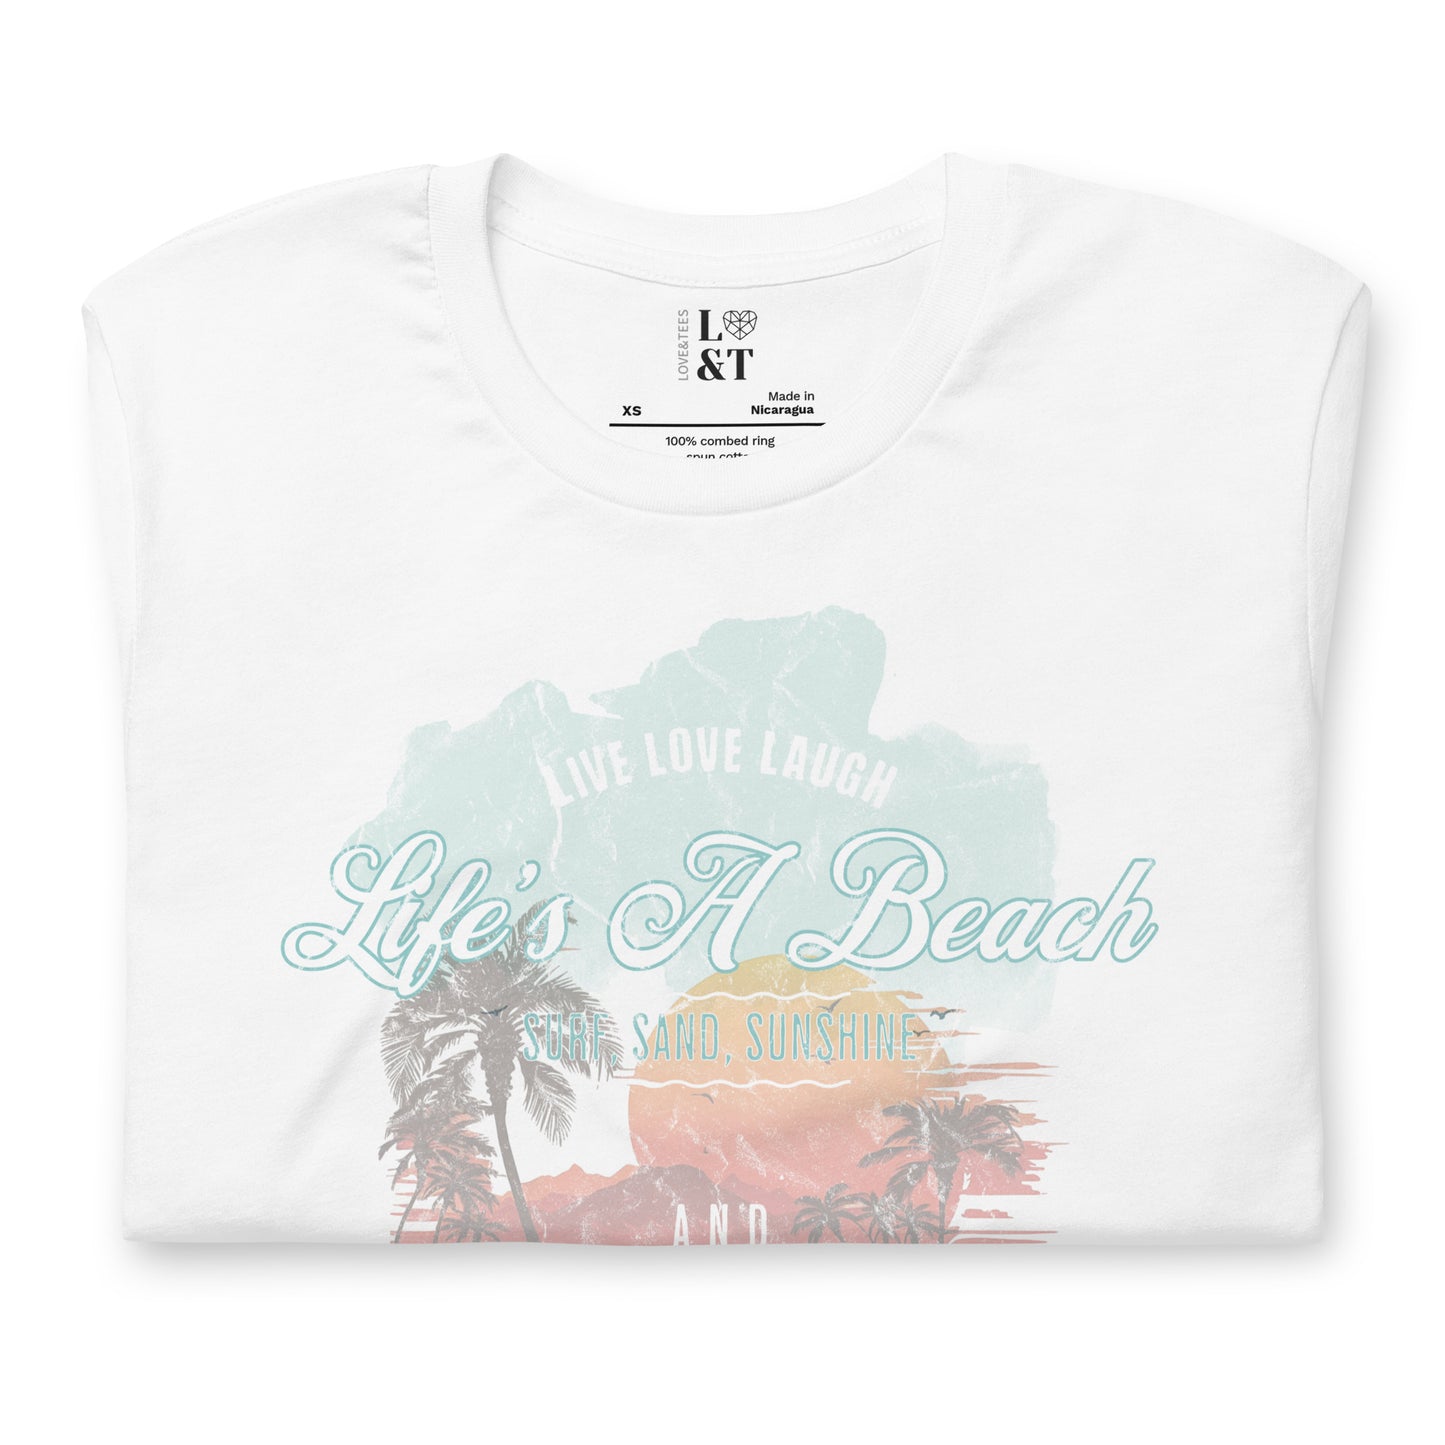 Life's A Beach Unisex T-Shirt